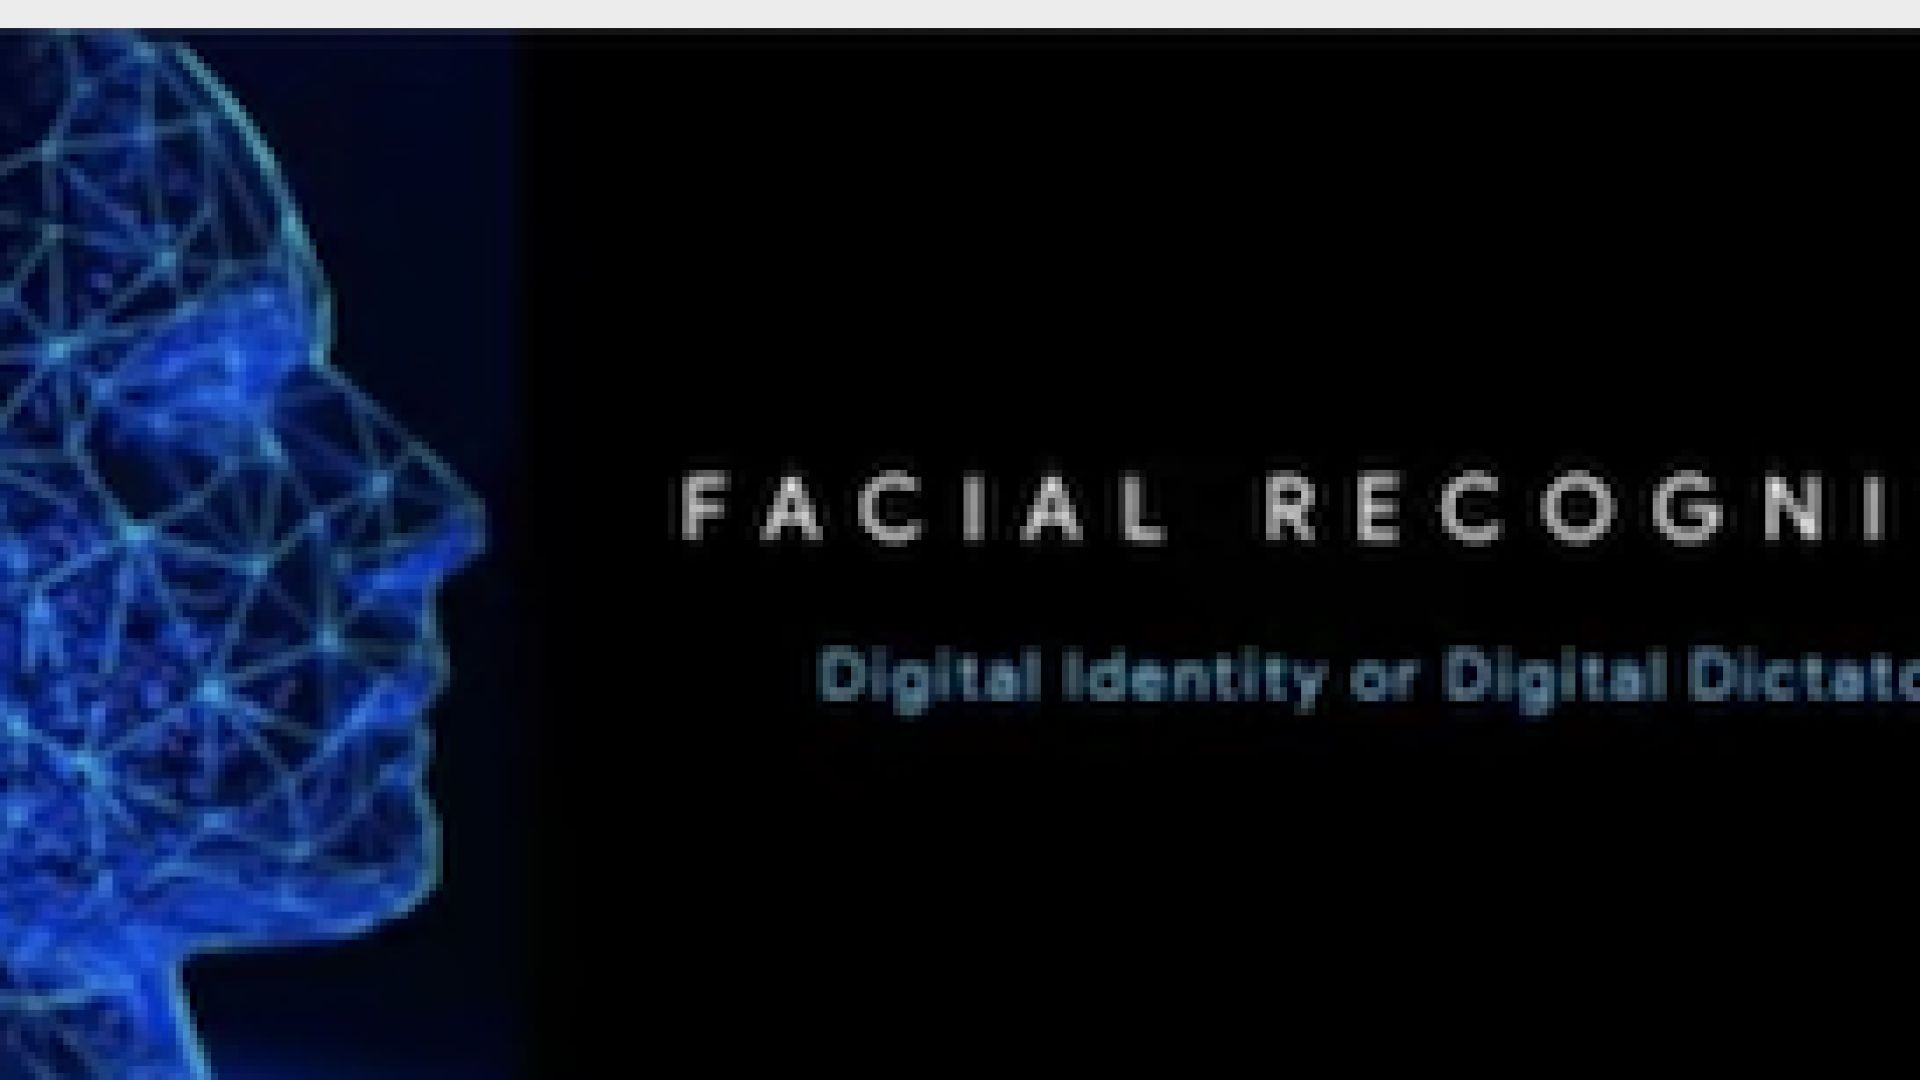 Digital ID or Digital Prison Presentation by Aman Jabbi. Please watch, be aware.